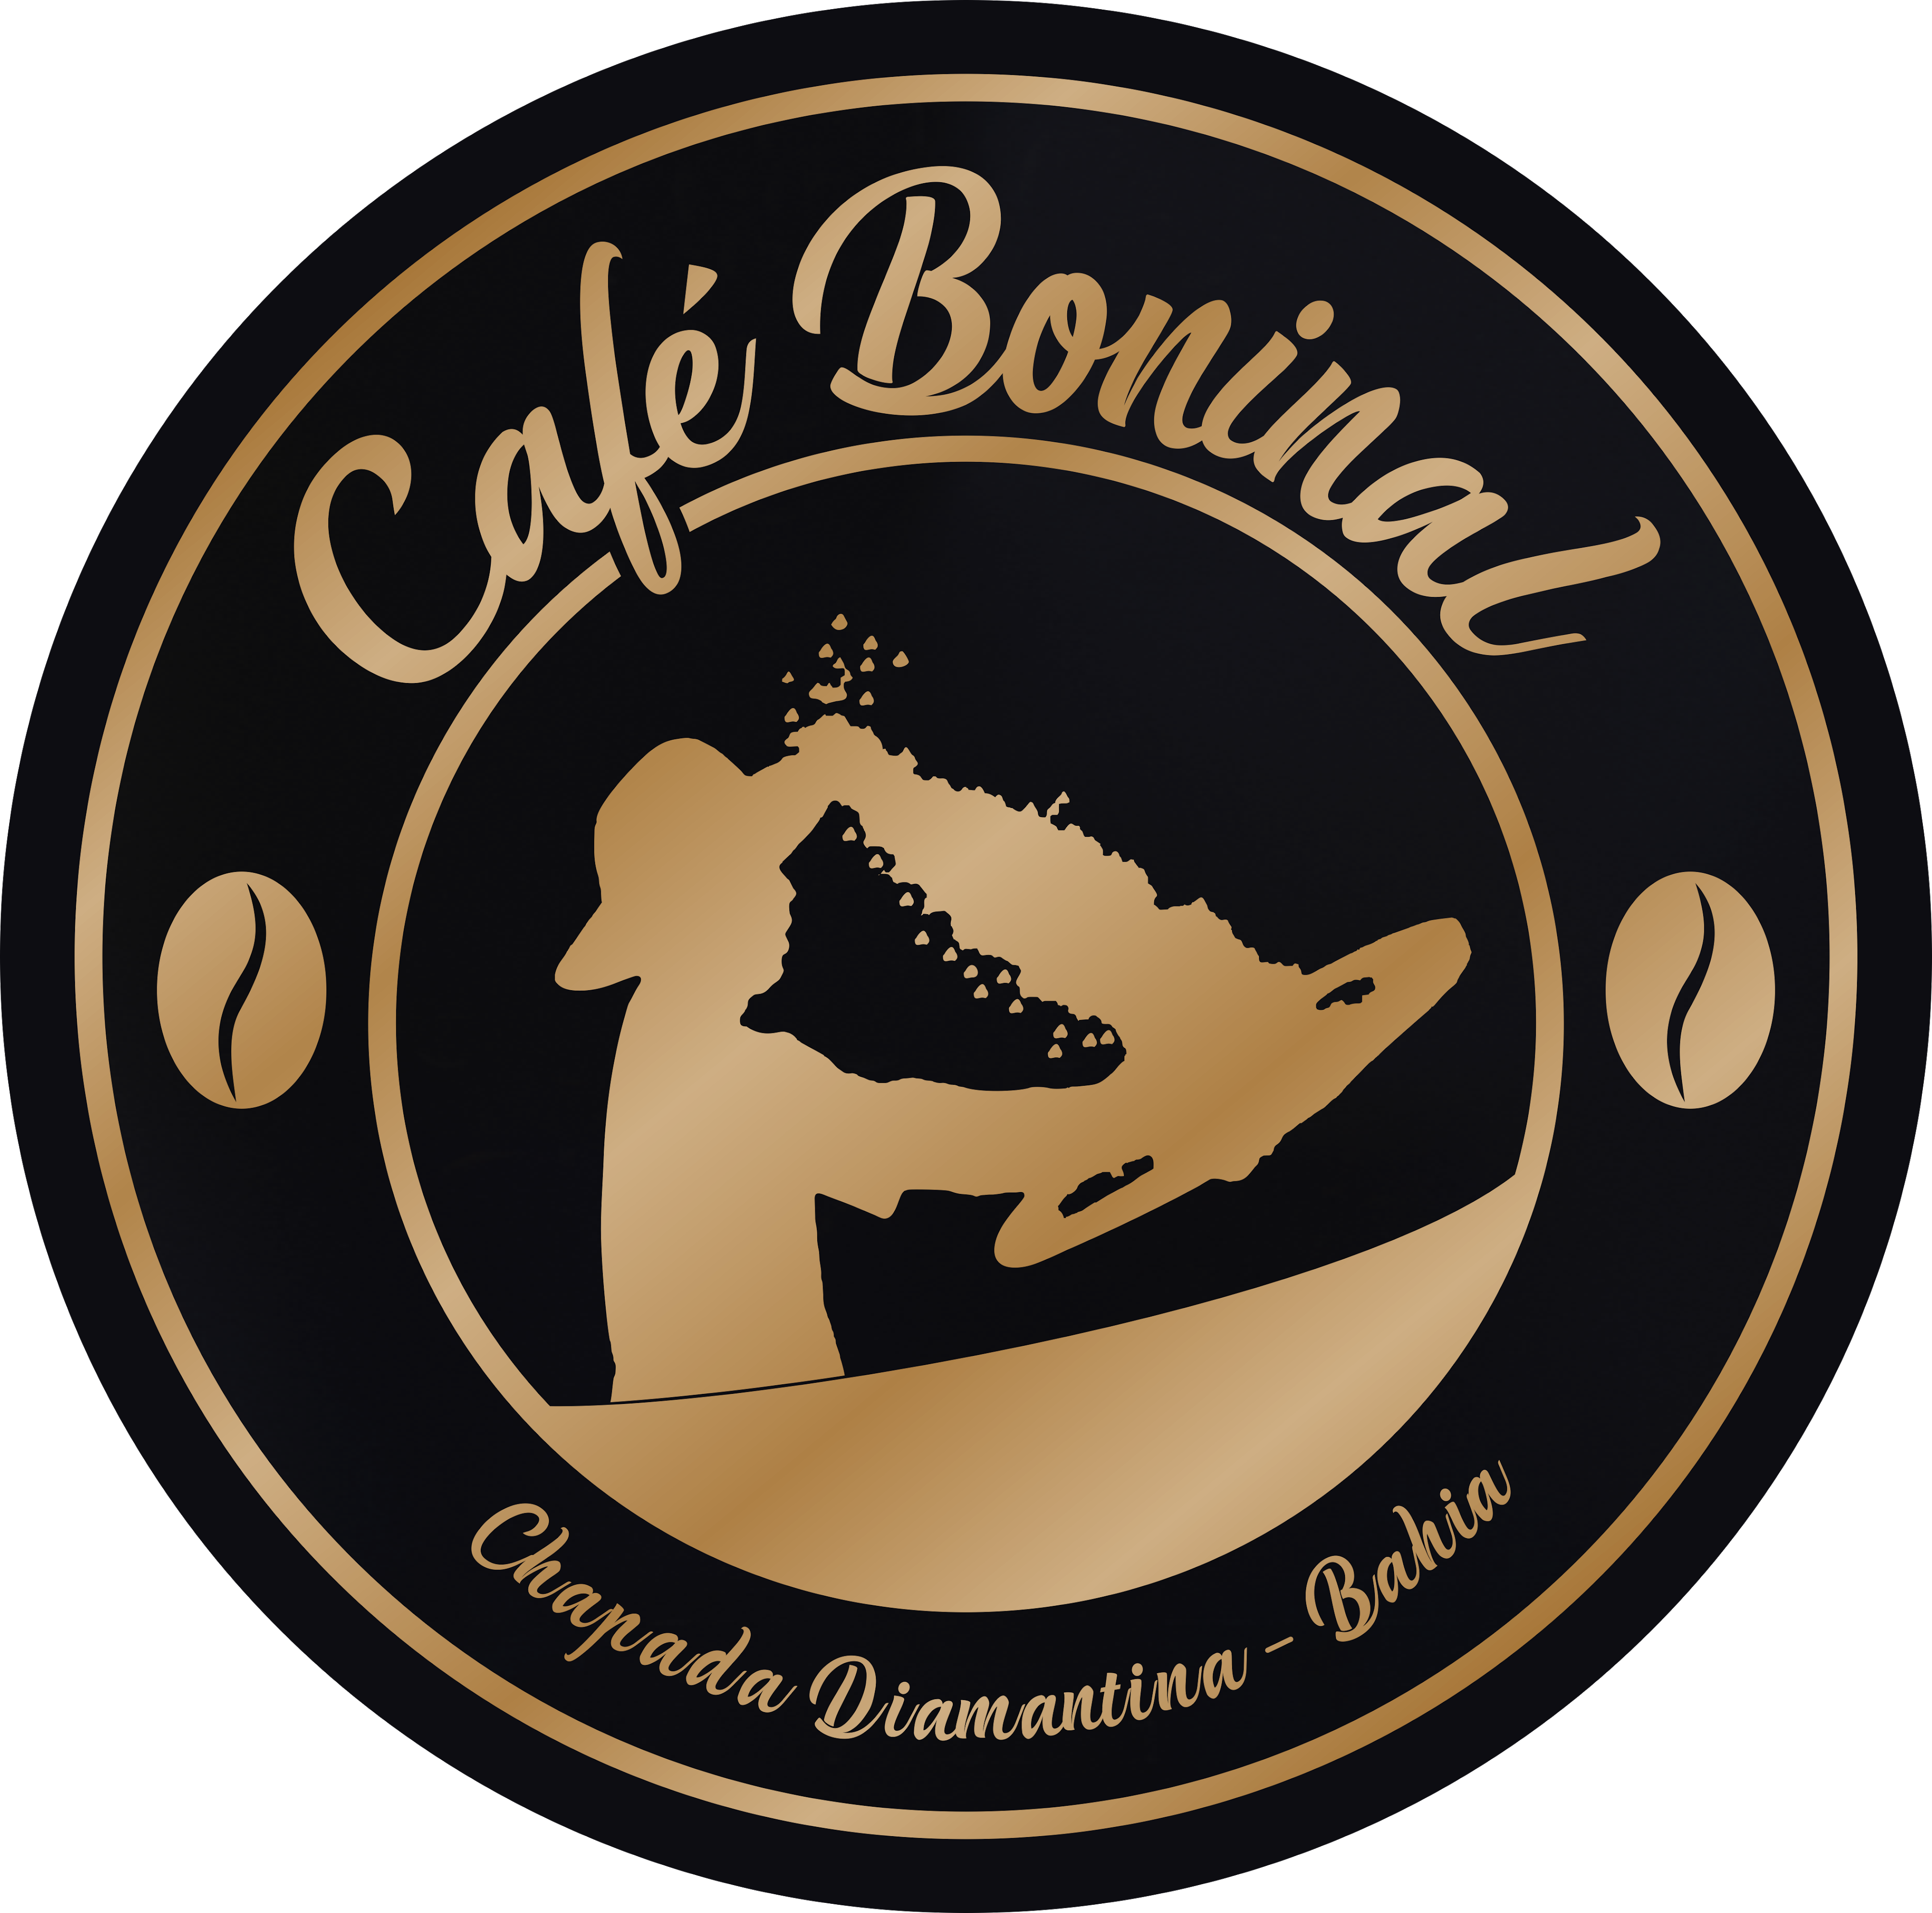 www.cafeboninal.com.br